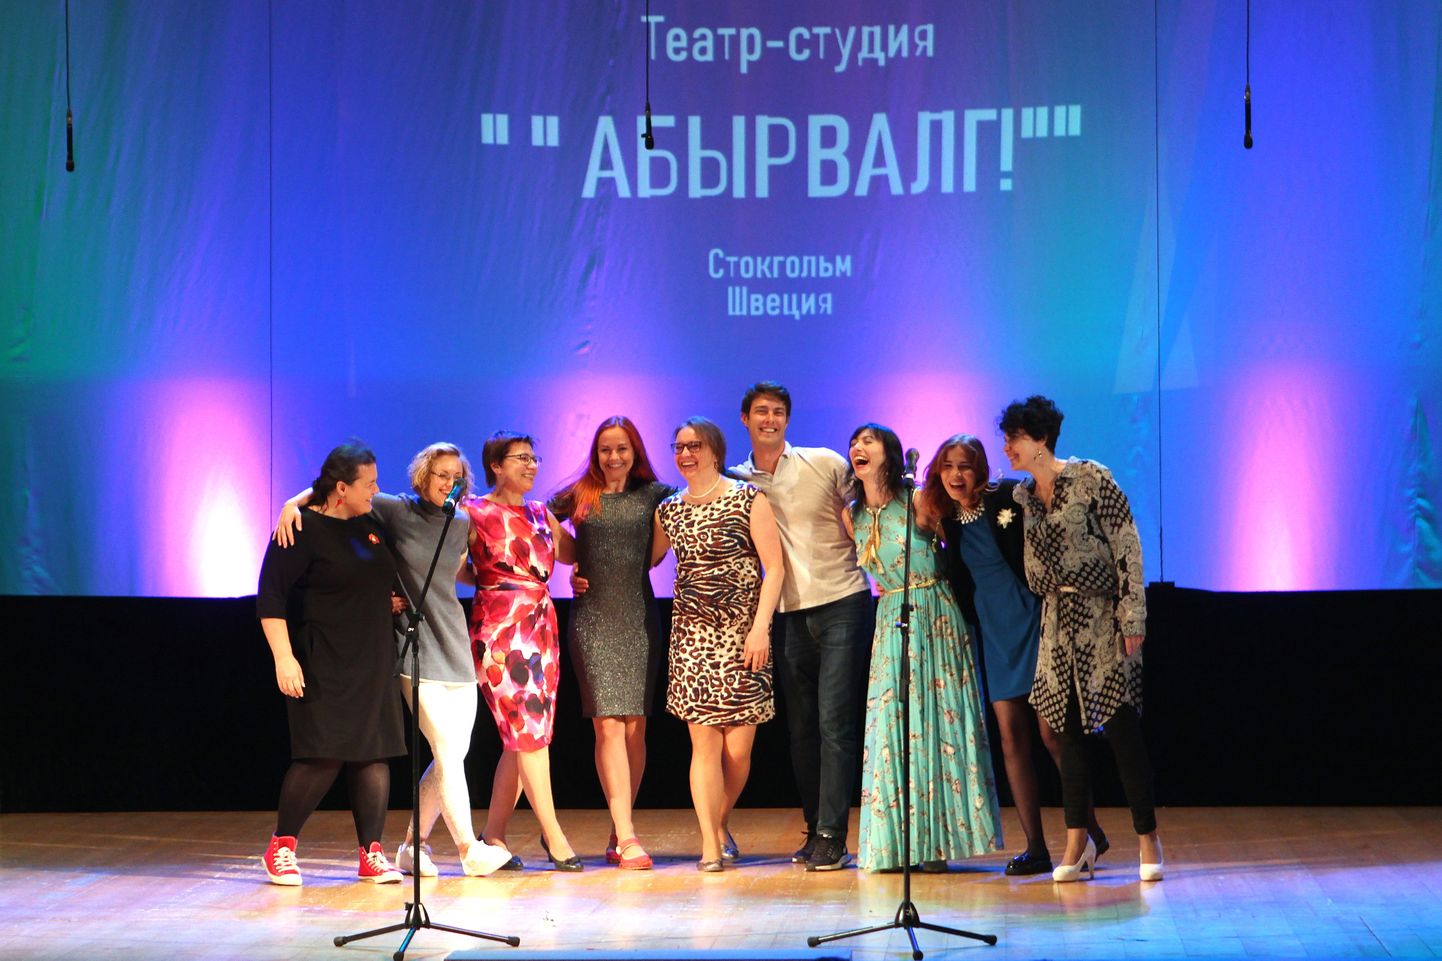 Артисты стокгольмского театра "АБЫРВАЛГ" покорили публику своим искусством.